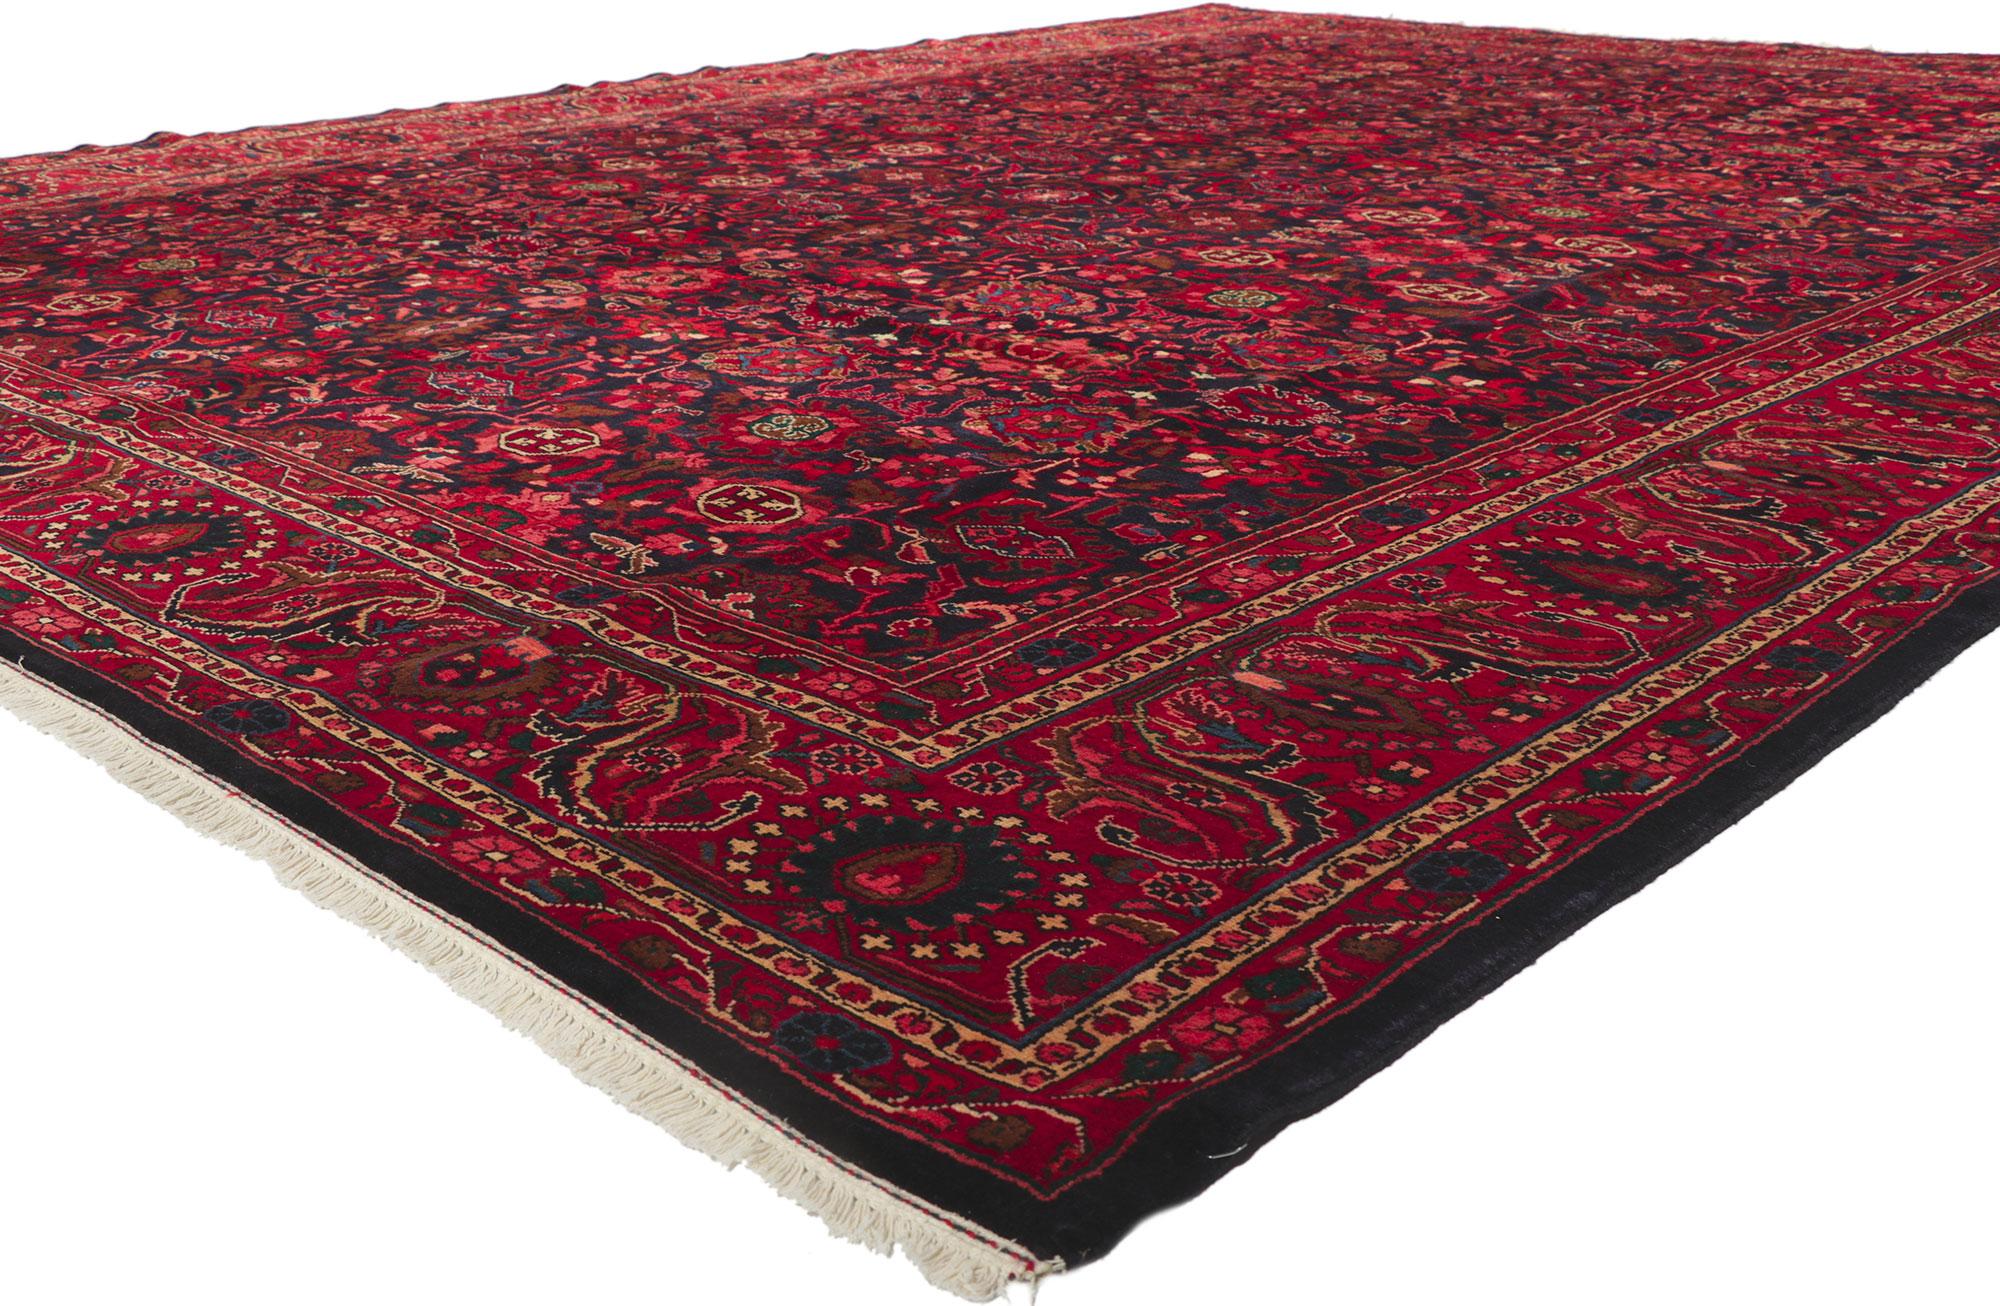 61197 Tapis Persan Vintage Malayer, 11'03 x 14'06. Avec son design intemporel et sa beauté séduisante aux couleurs saturées, ce tapis Persan Malayer en laine noué à la main est prêt à impressionner. Un motif botanique répétitif s'étend sur le champ